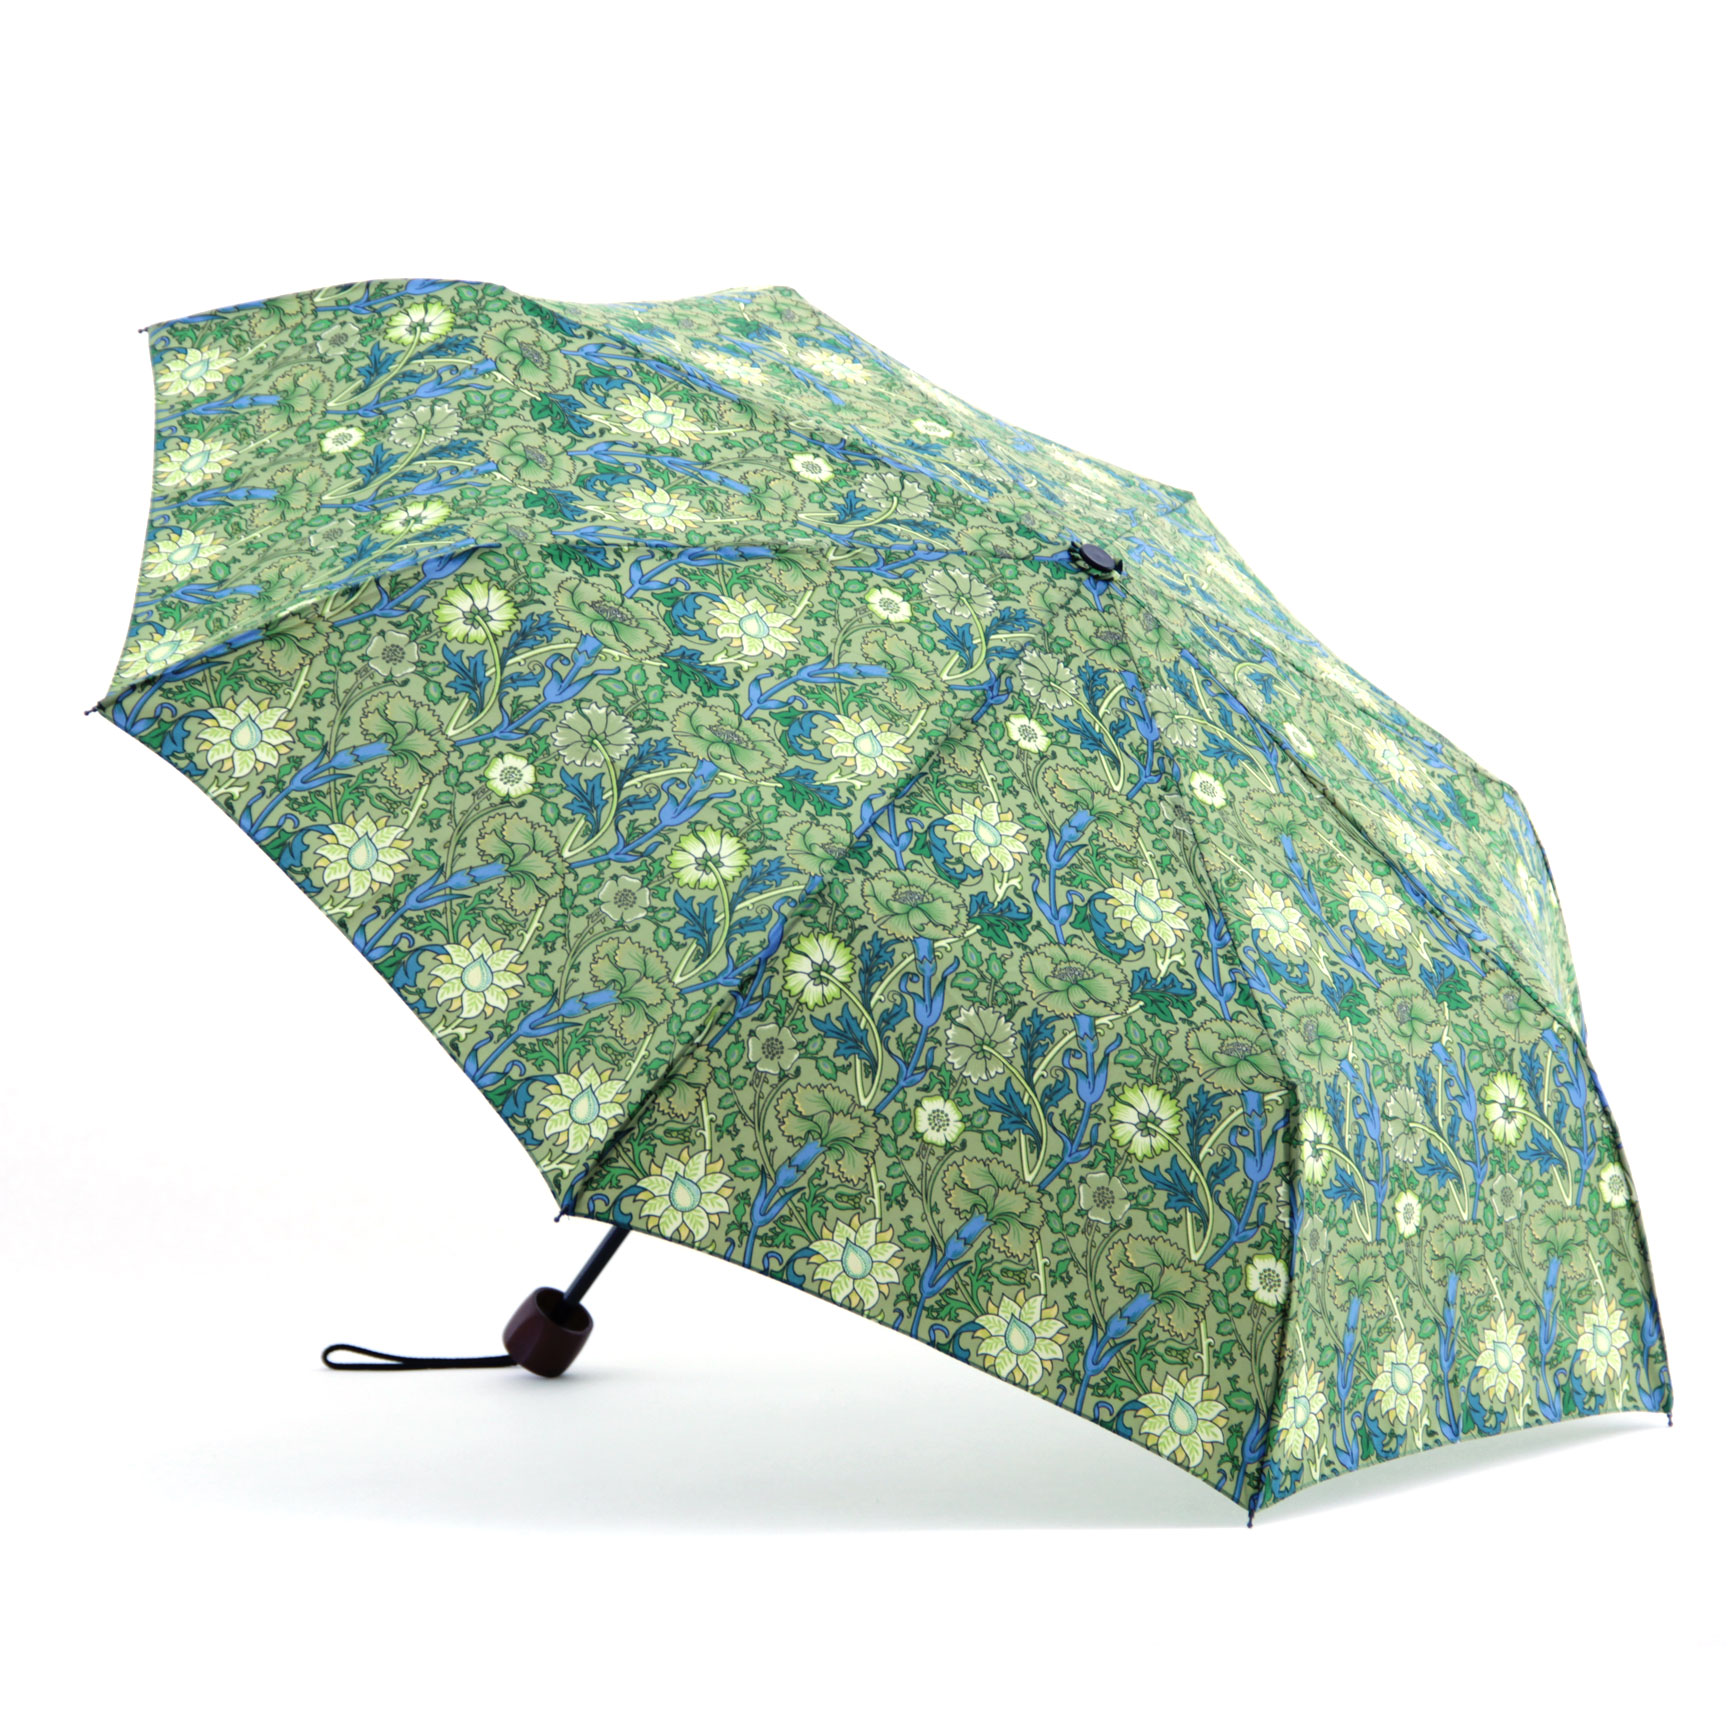 Morris print Steel & Fiberglass Compact Umbrella